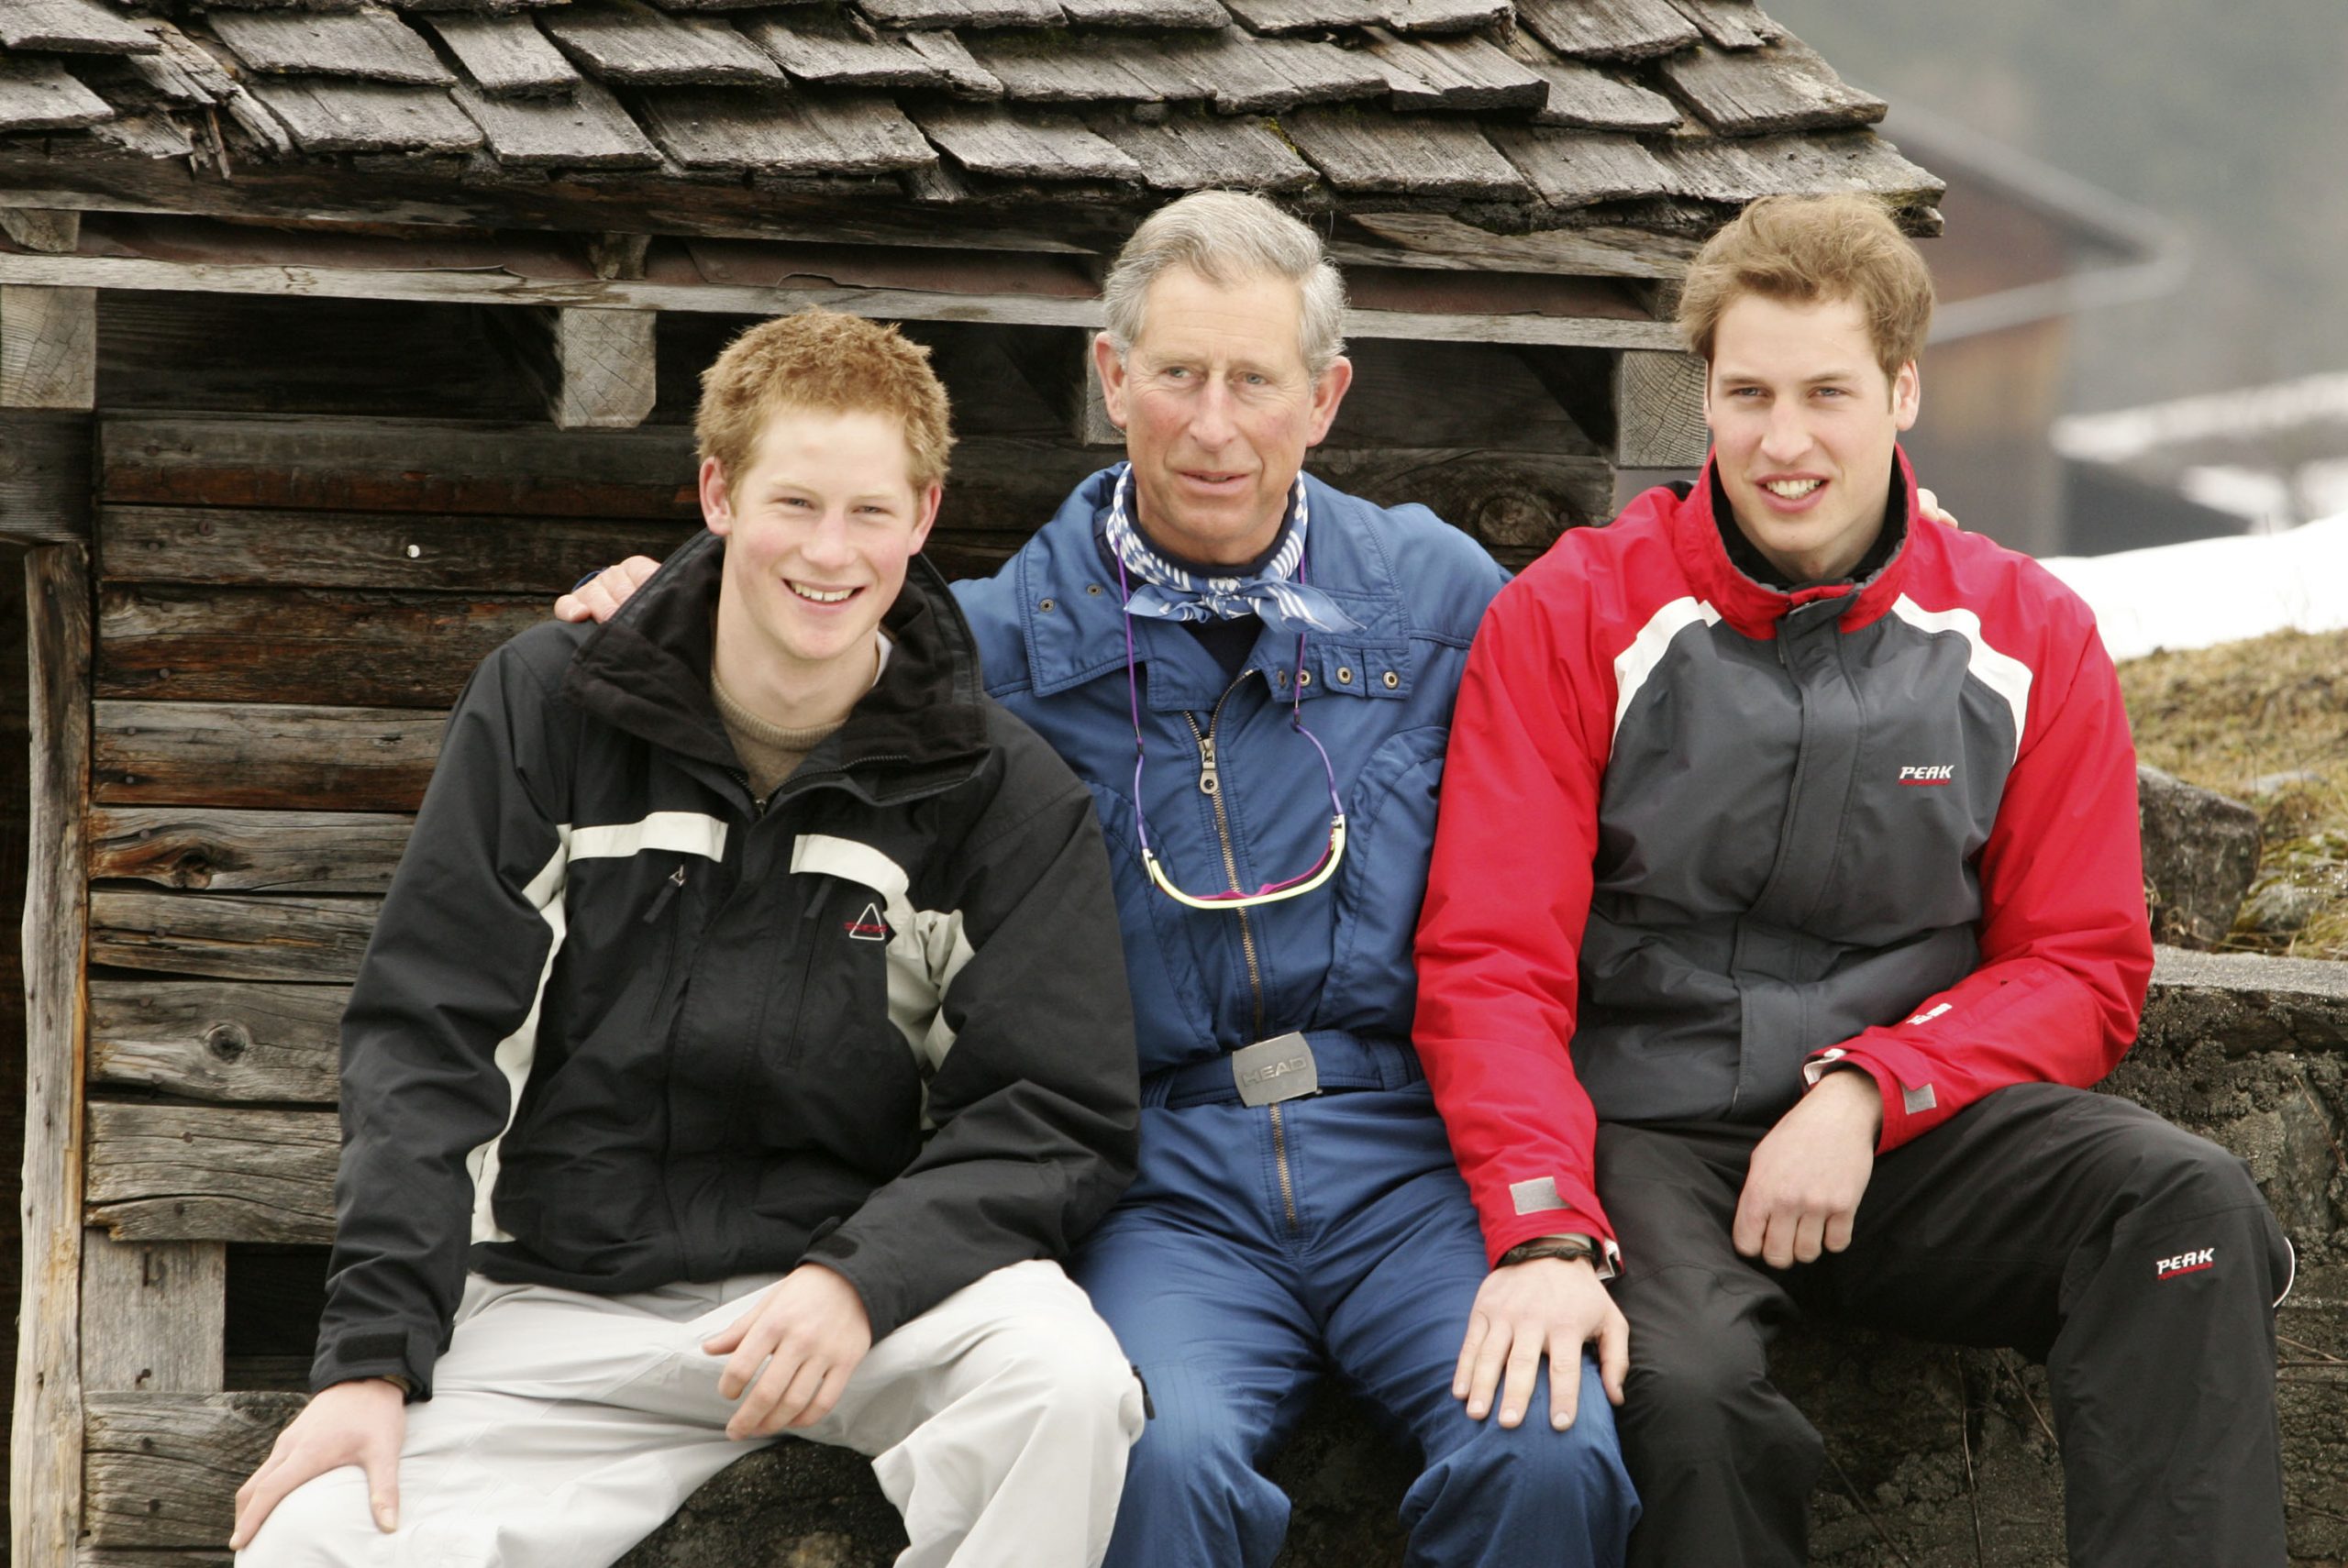 Printii Charles, Harry, William, în vacanța de ski din Elveția, Klosters, în 2005. Toți 3 îmbrăcați în costume de ski, cu zăpadă și o cabană în spate